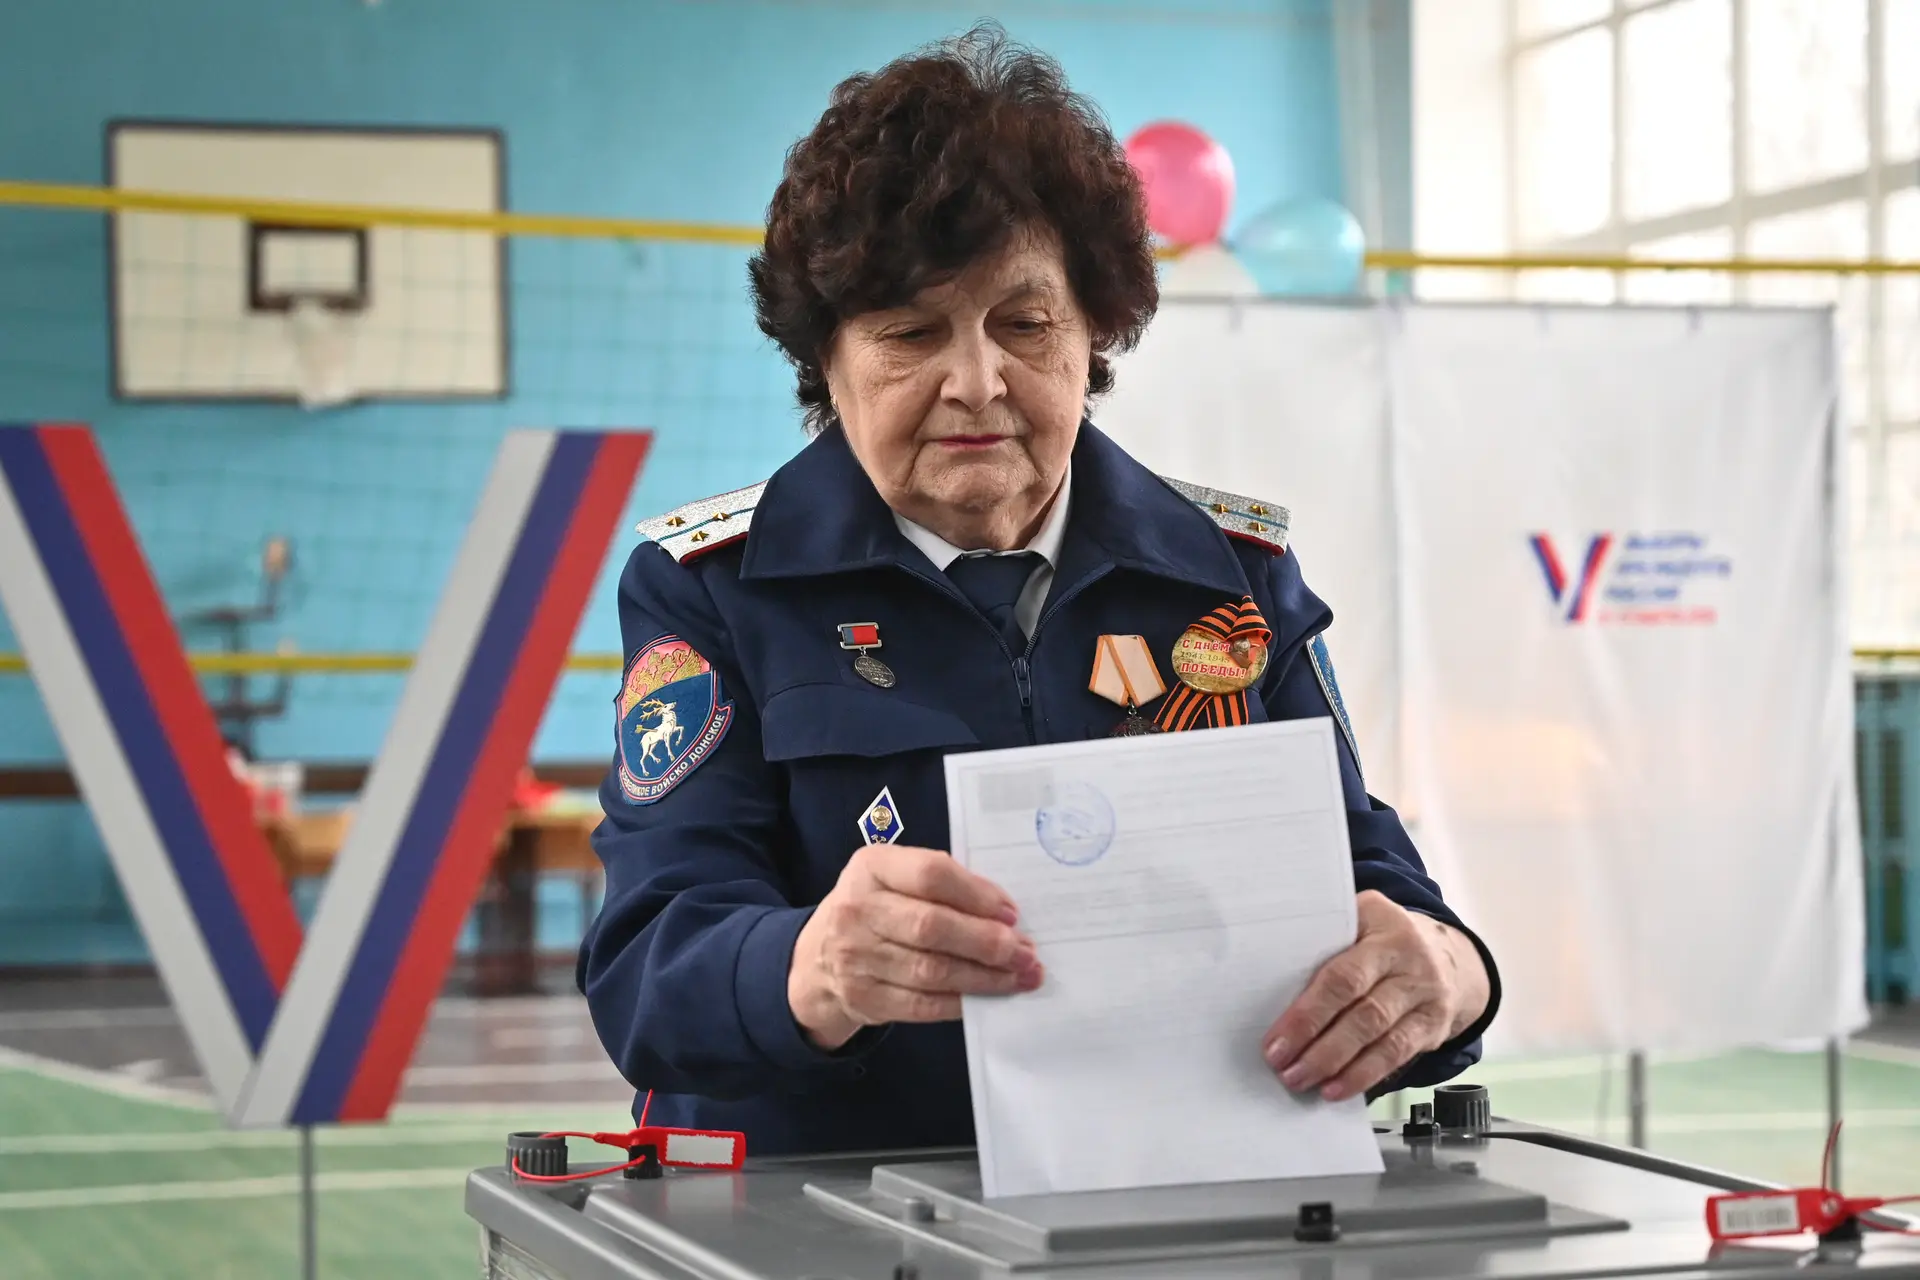 Condenada a oito dias de prisão mulher russa que escreveu "Não à Guerra" em boletim de voto